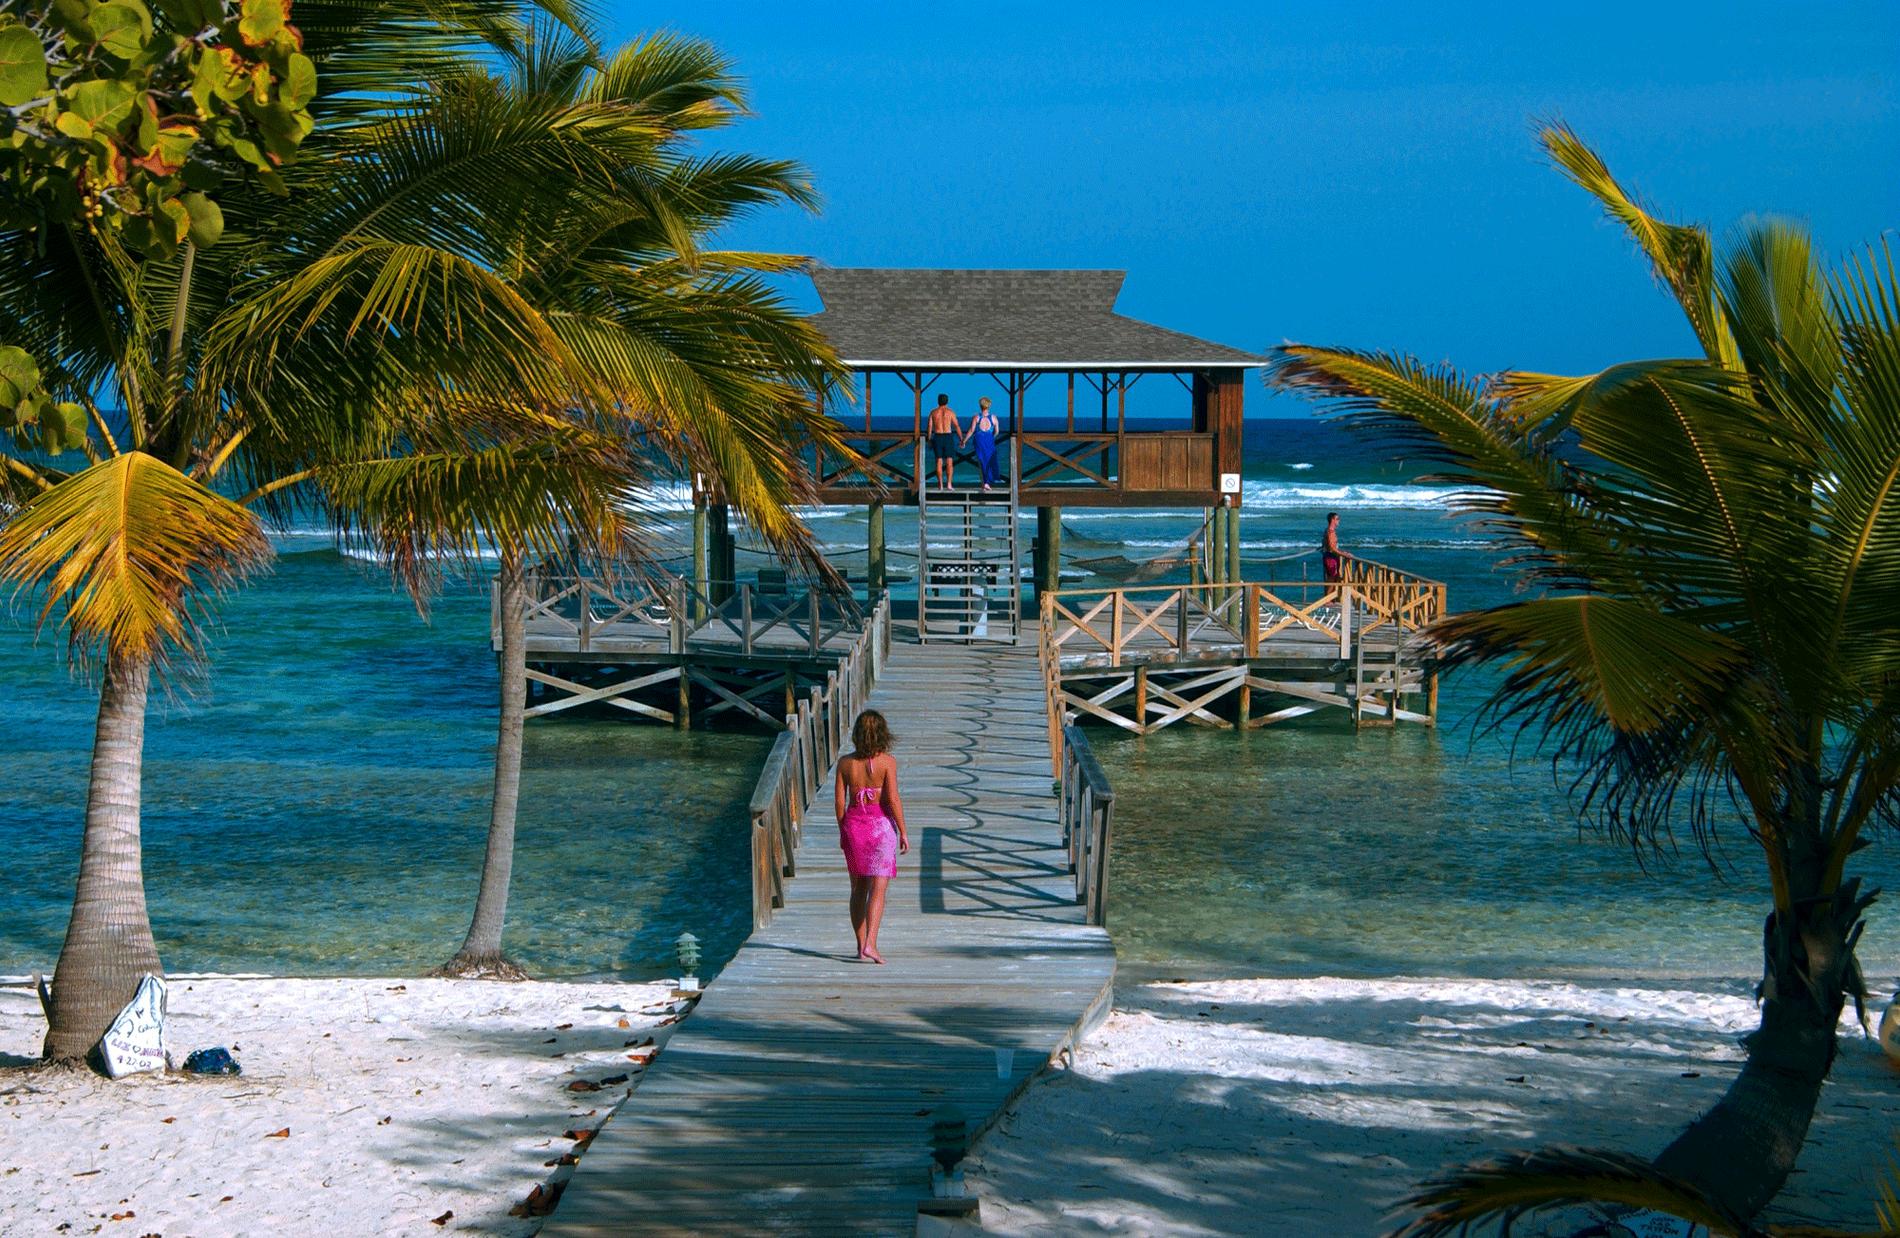 22. Grand Cayman, Caymanöarna Den största av Caymanöarna i Karibiska havet. Detta är ett semesterparadis med en historia som involverar bland annat pirater. Öns Seven Mile Beach är känd för sin vita korallsand och sitt genomskinliga vatten. Ön har också spännande dykning och snorkling.
Missa inte: Stingray City, där stingrockorna simmar alldeles intill dig.